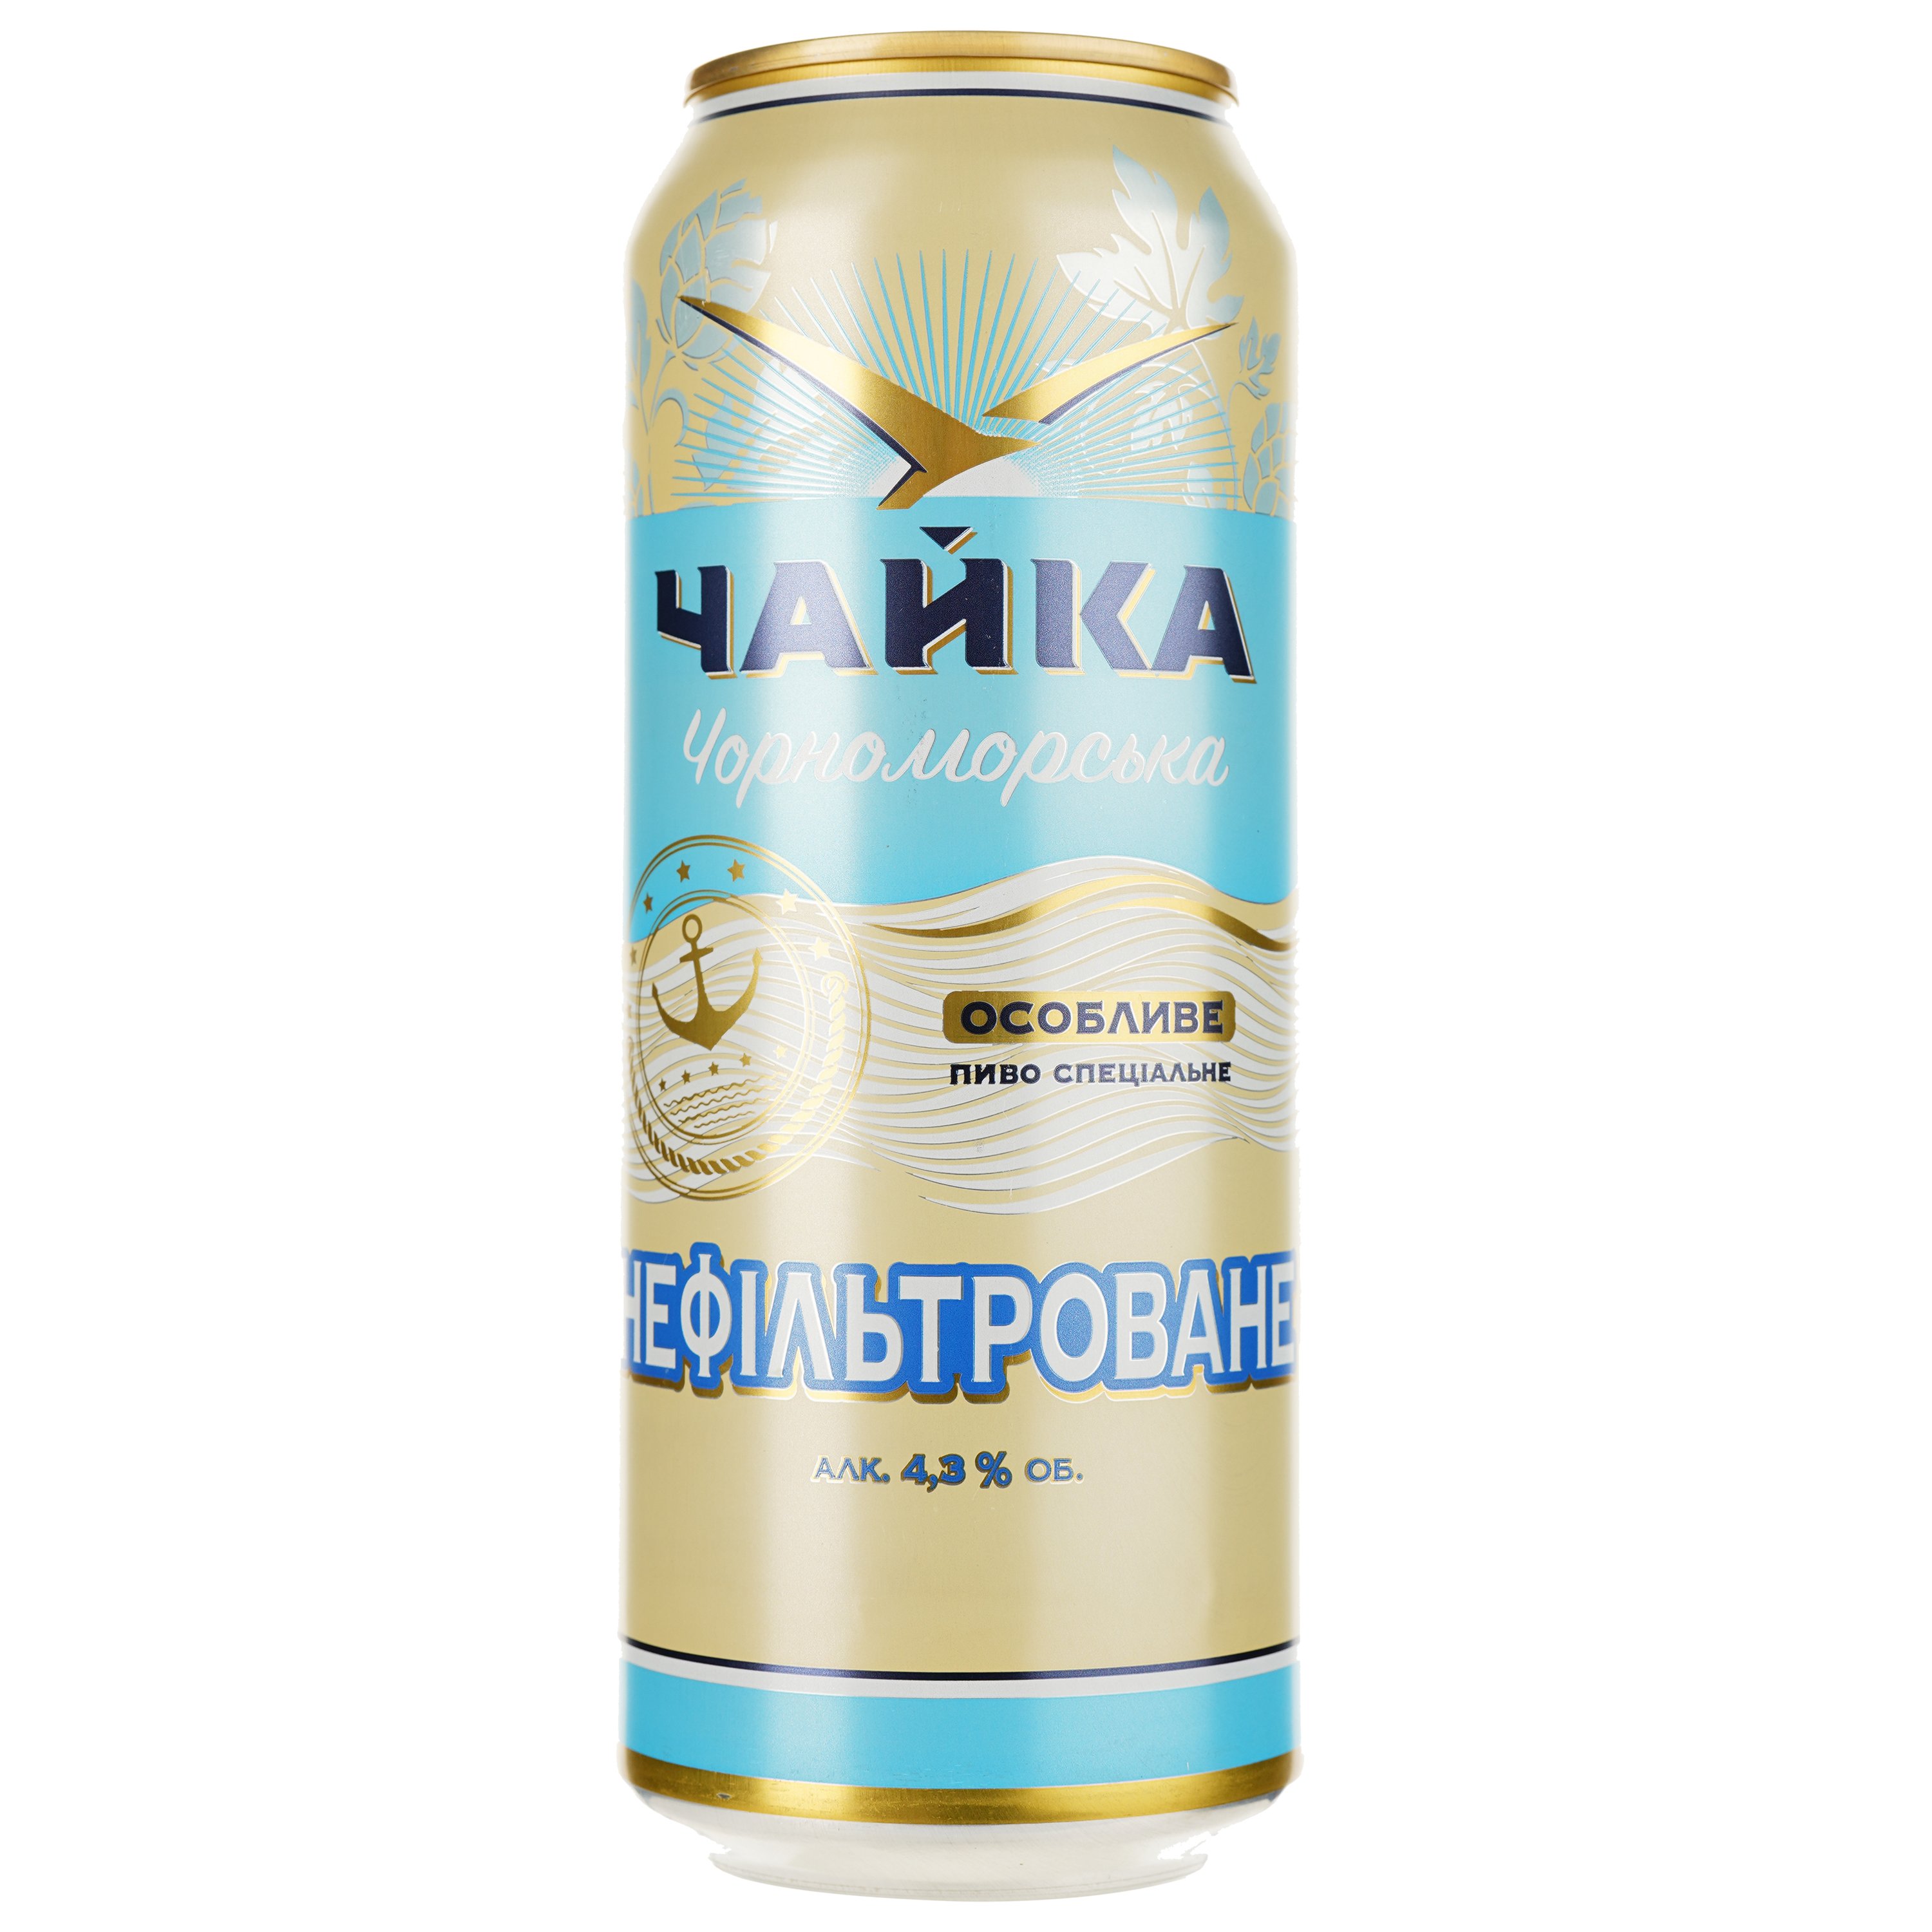 Пиво Чайка Чорноморська Особливе, светлое, 4,3%, ж/б, 0,5 л - фото 1